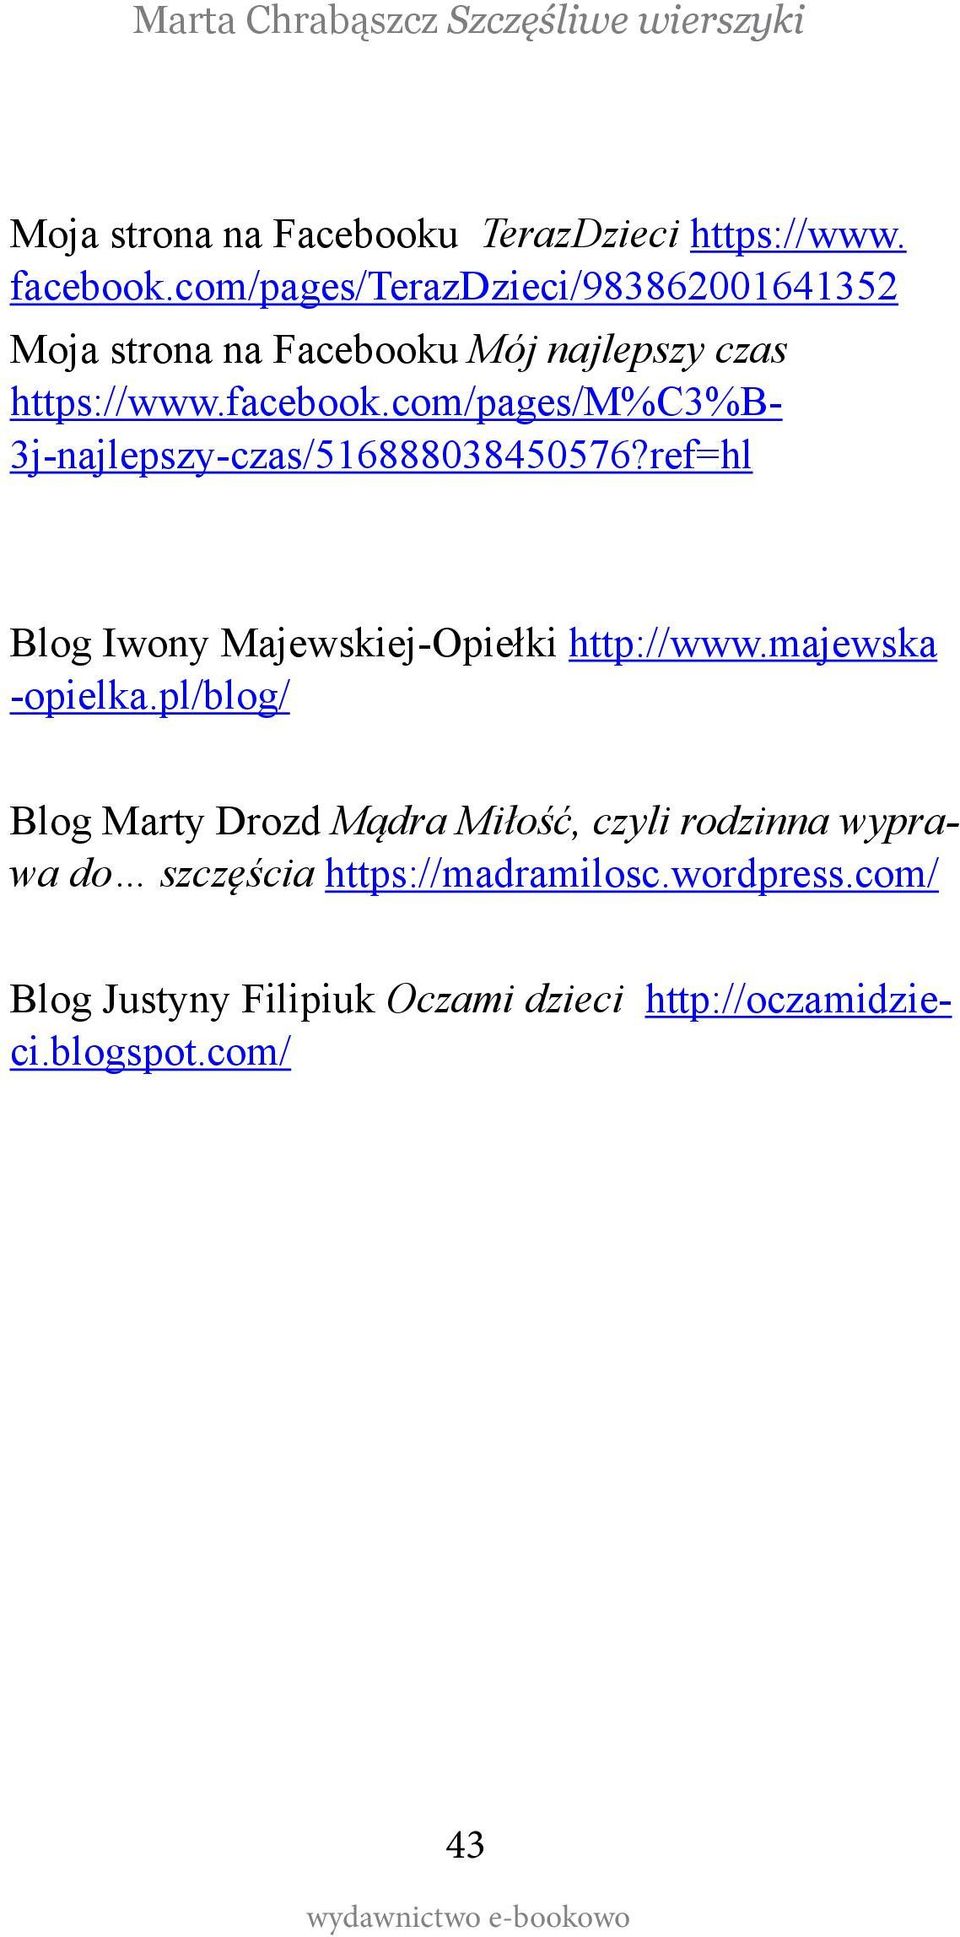 com/pages/m%c3%b- 3j-najlepszy-czas/516888038450576?ref=hl Blog Iwony Majewskiej-Opiełki http://www.